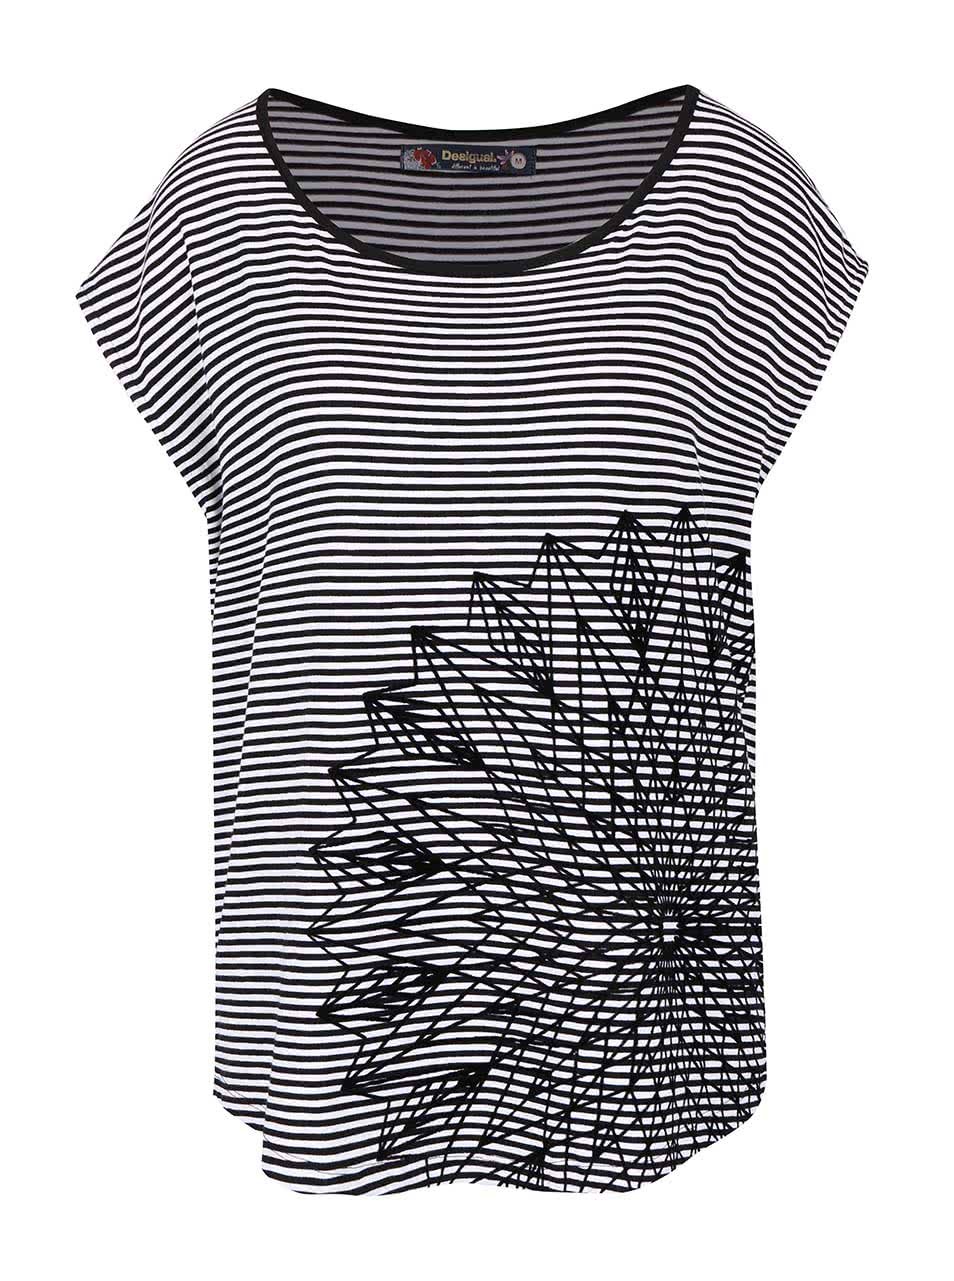 Bílo-černé pruhované tričko Desigual Amapola